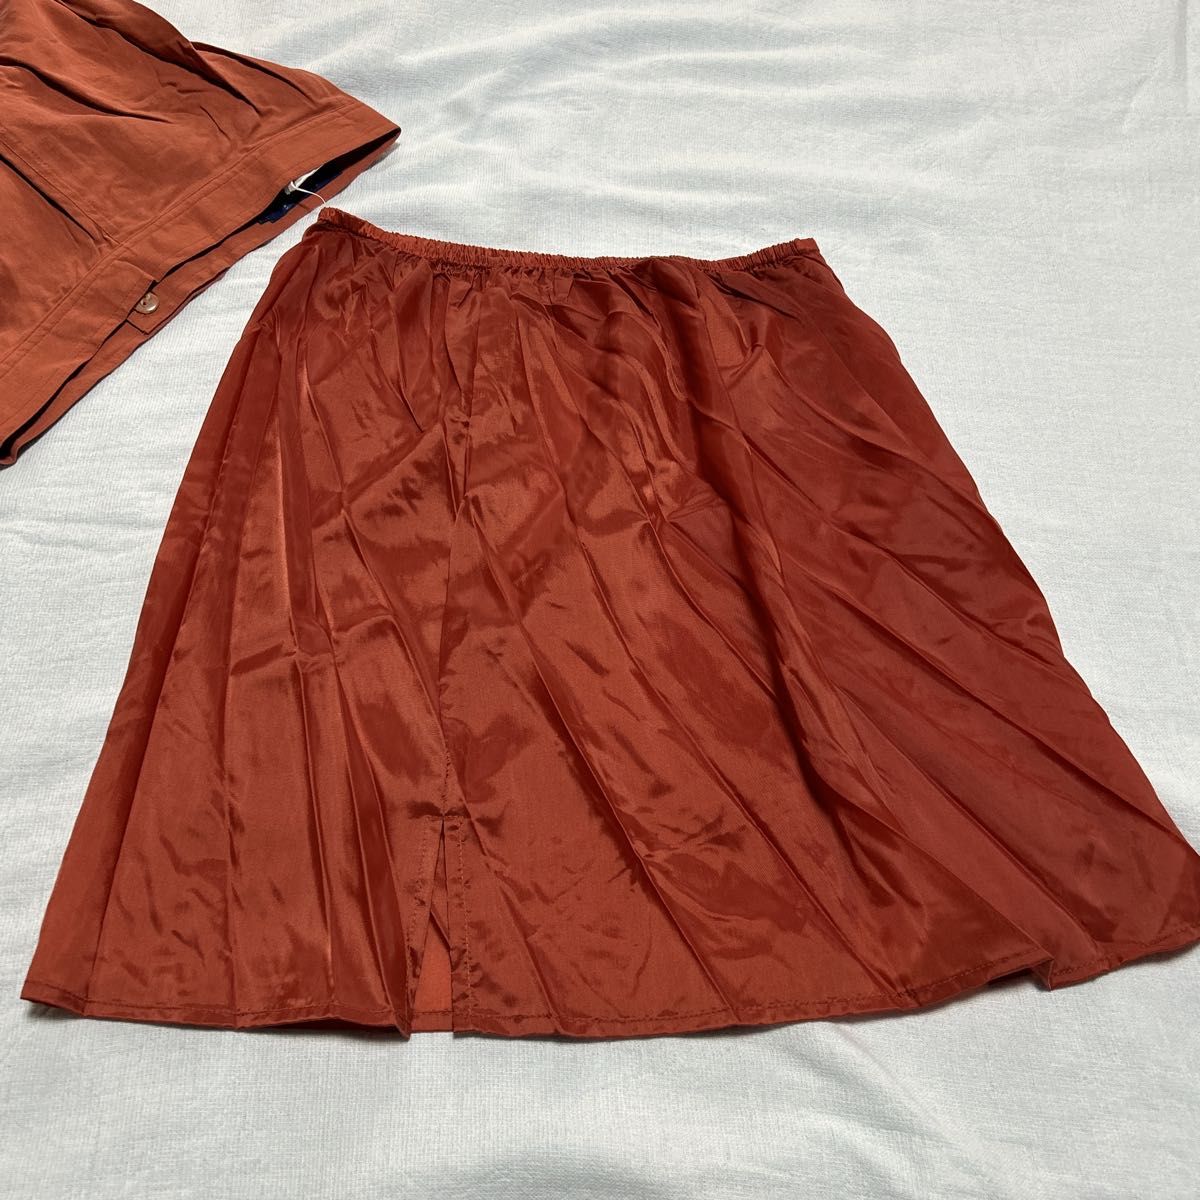 未使用品 Jasmi シルク フレアースカート オレンジ系 Mサイズ ポケット無し シルク100% ペチコート付き ロングスカート